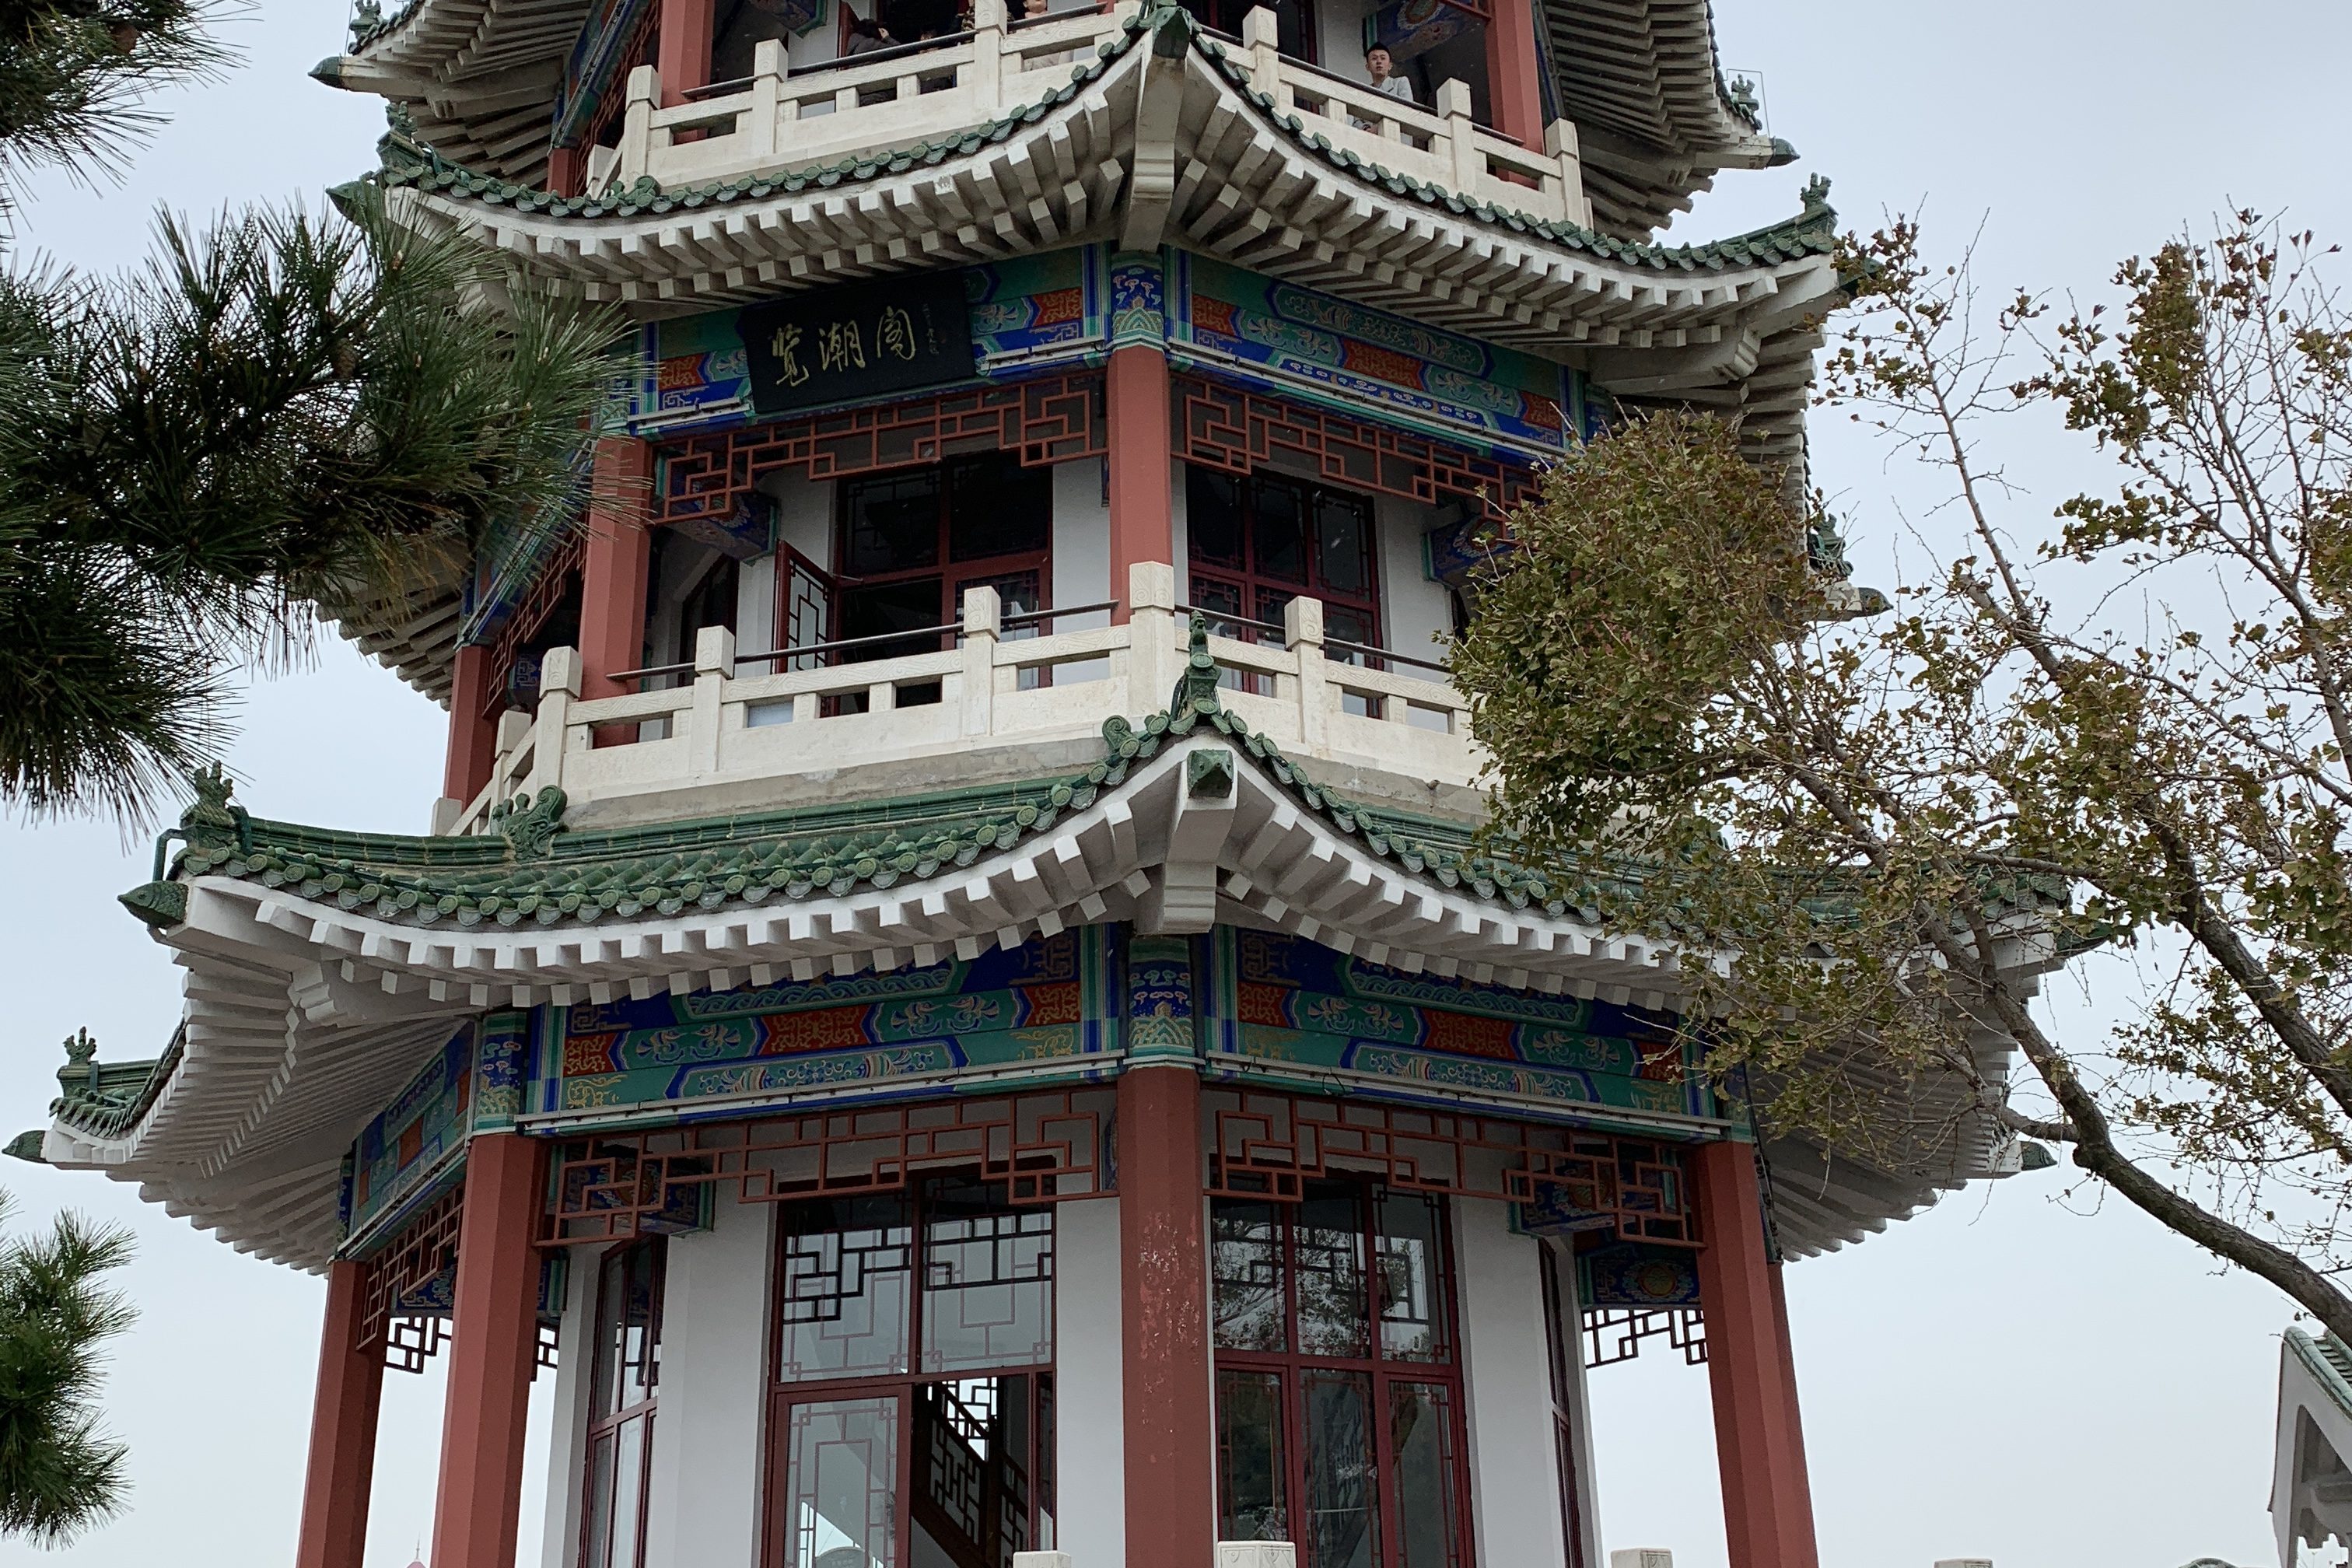 Shandong pagoda